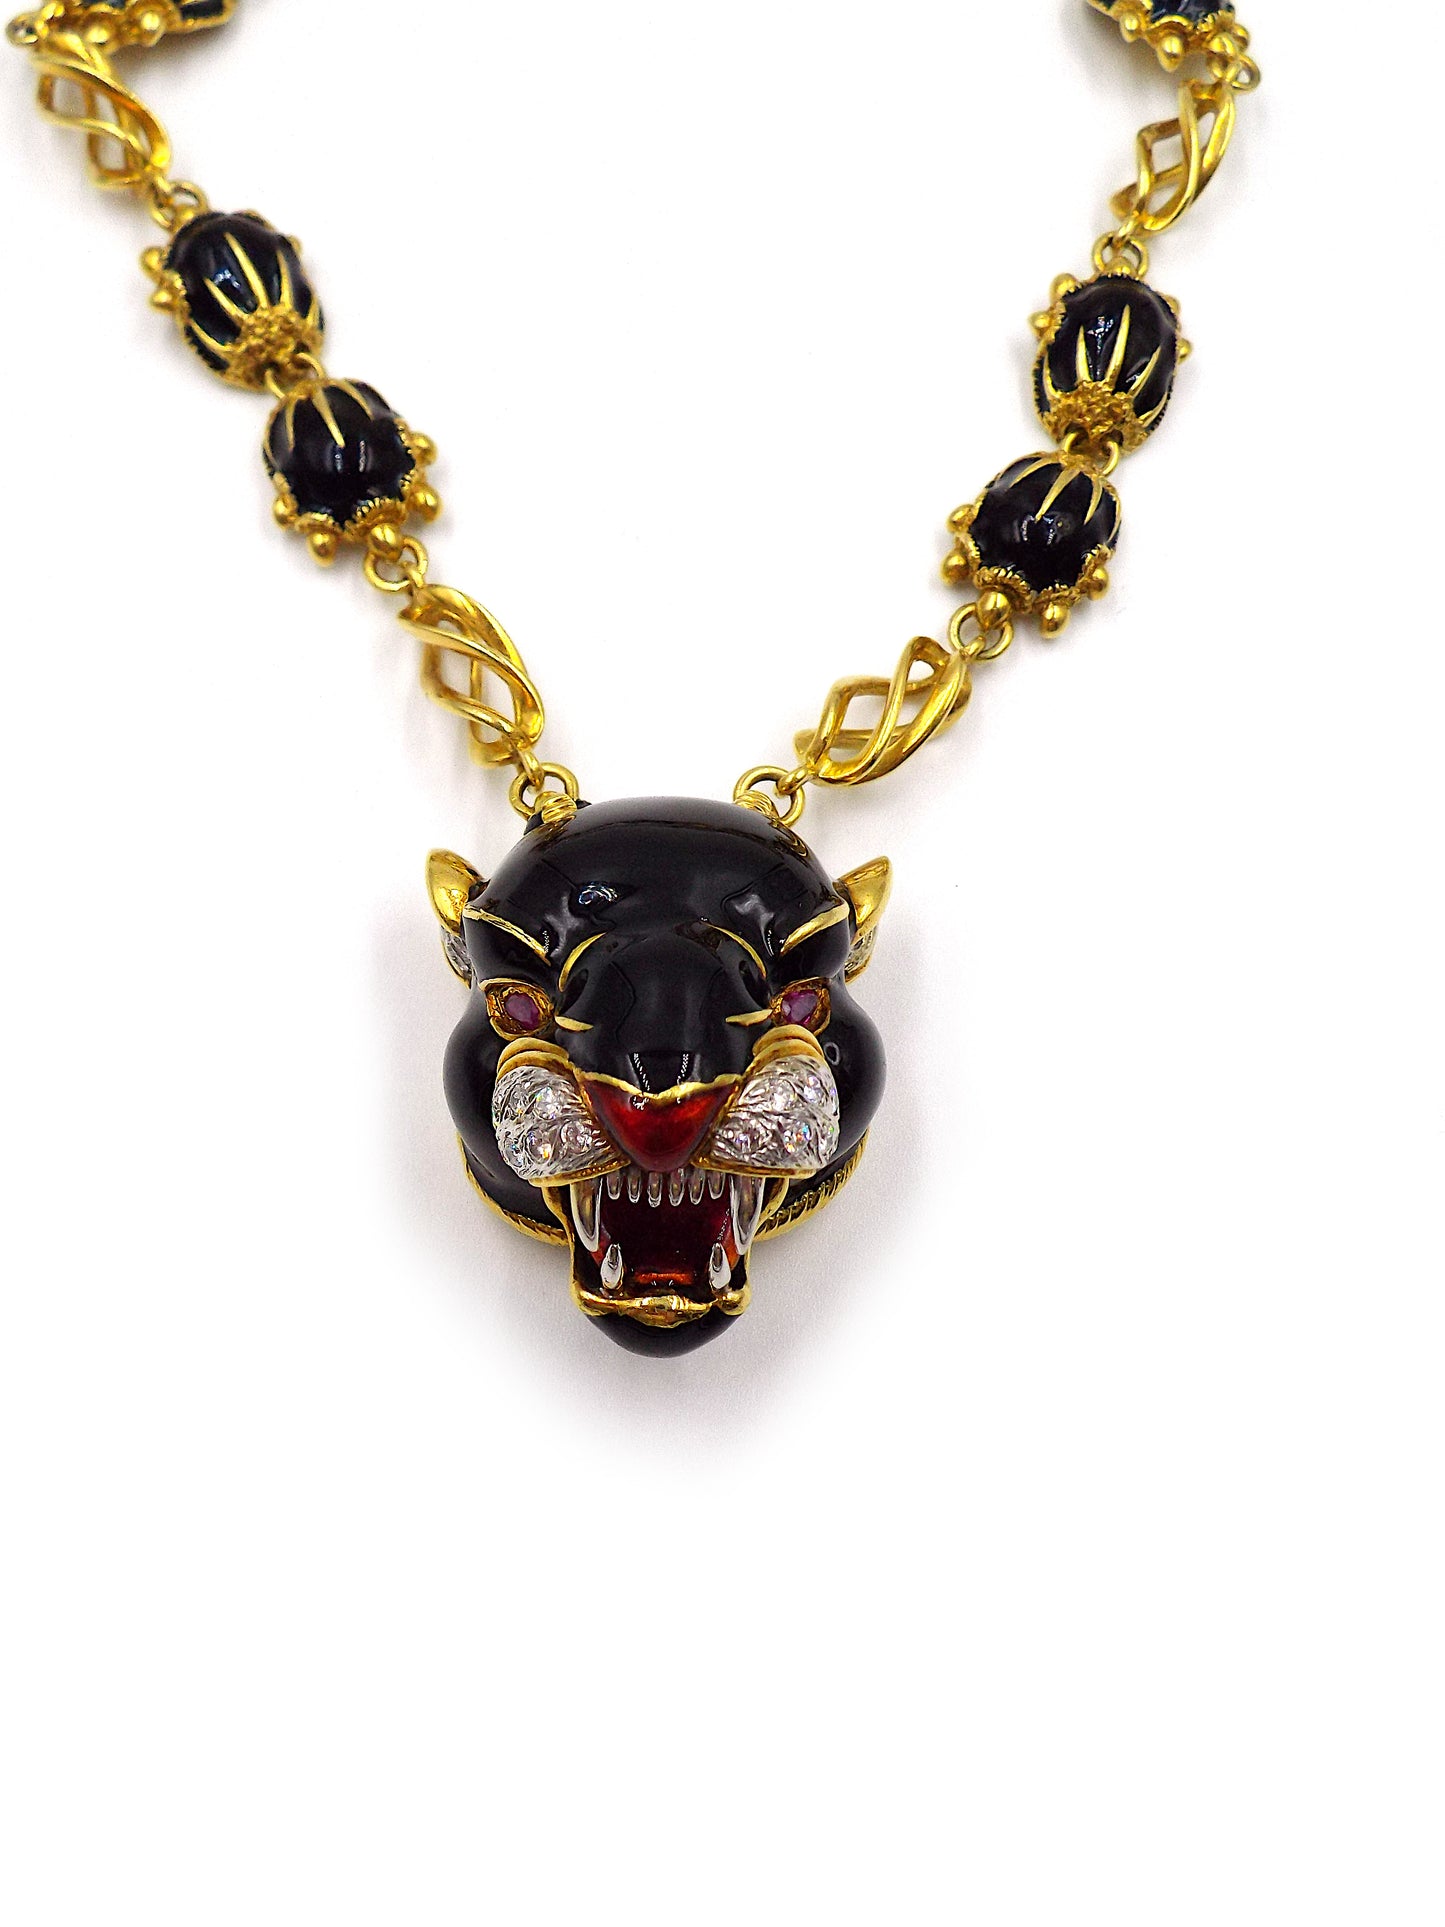 Frascarolo 18K Gold Enamel and Diamond Panther Necklace